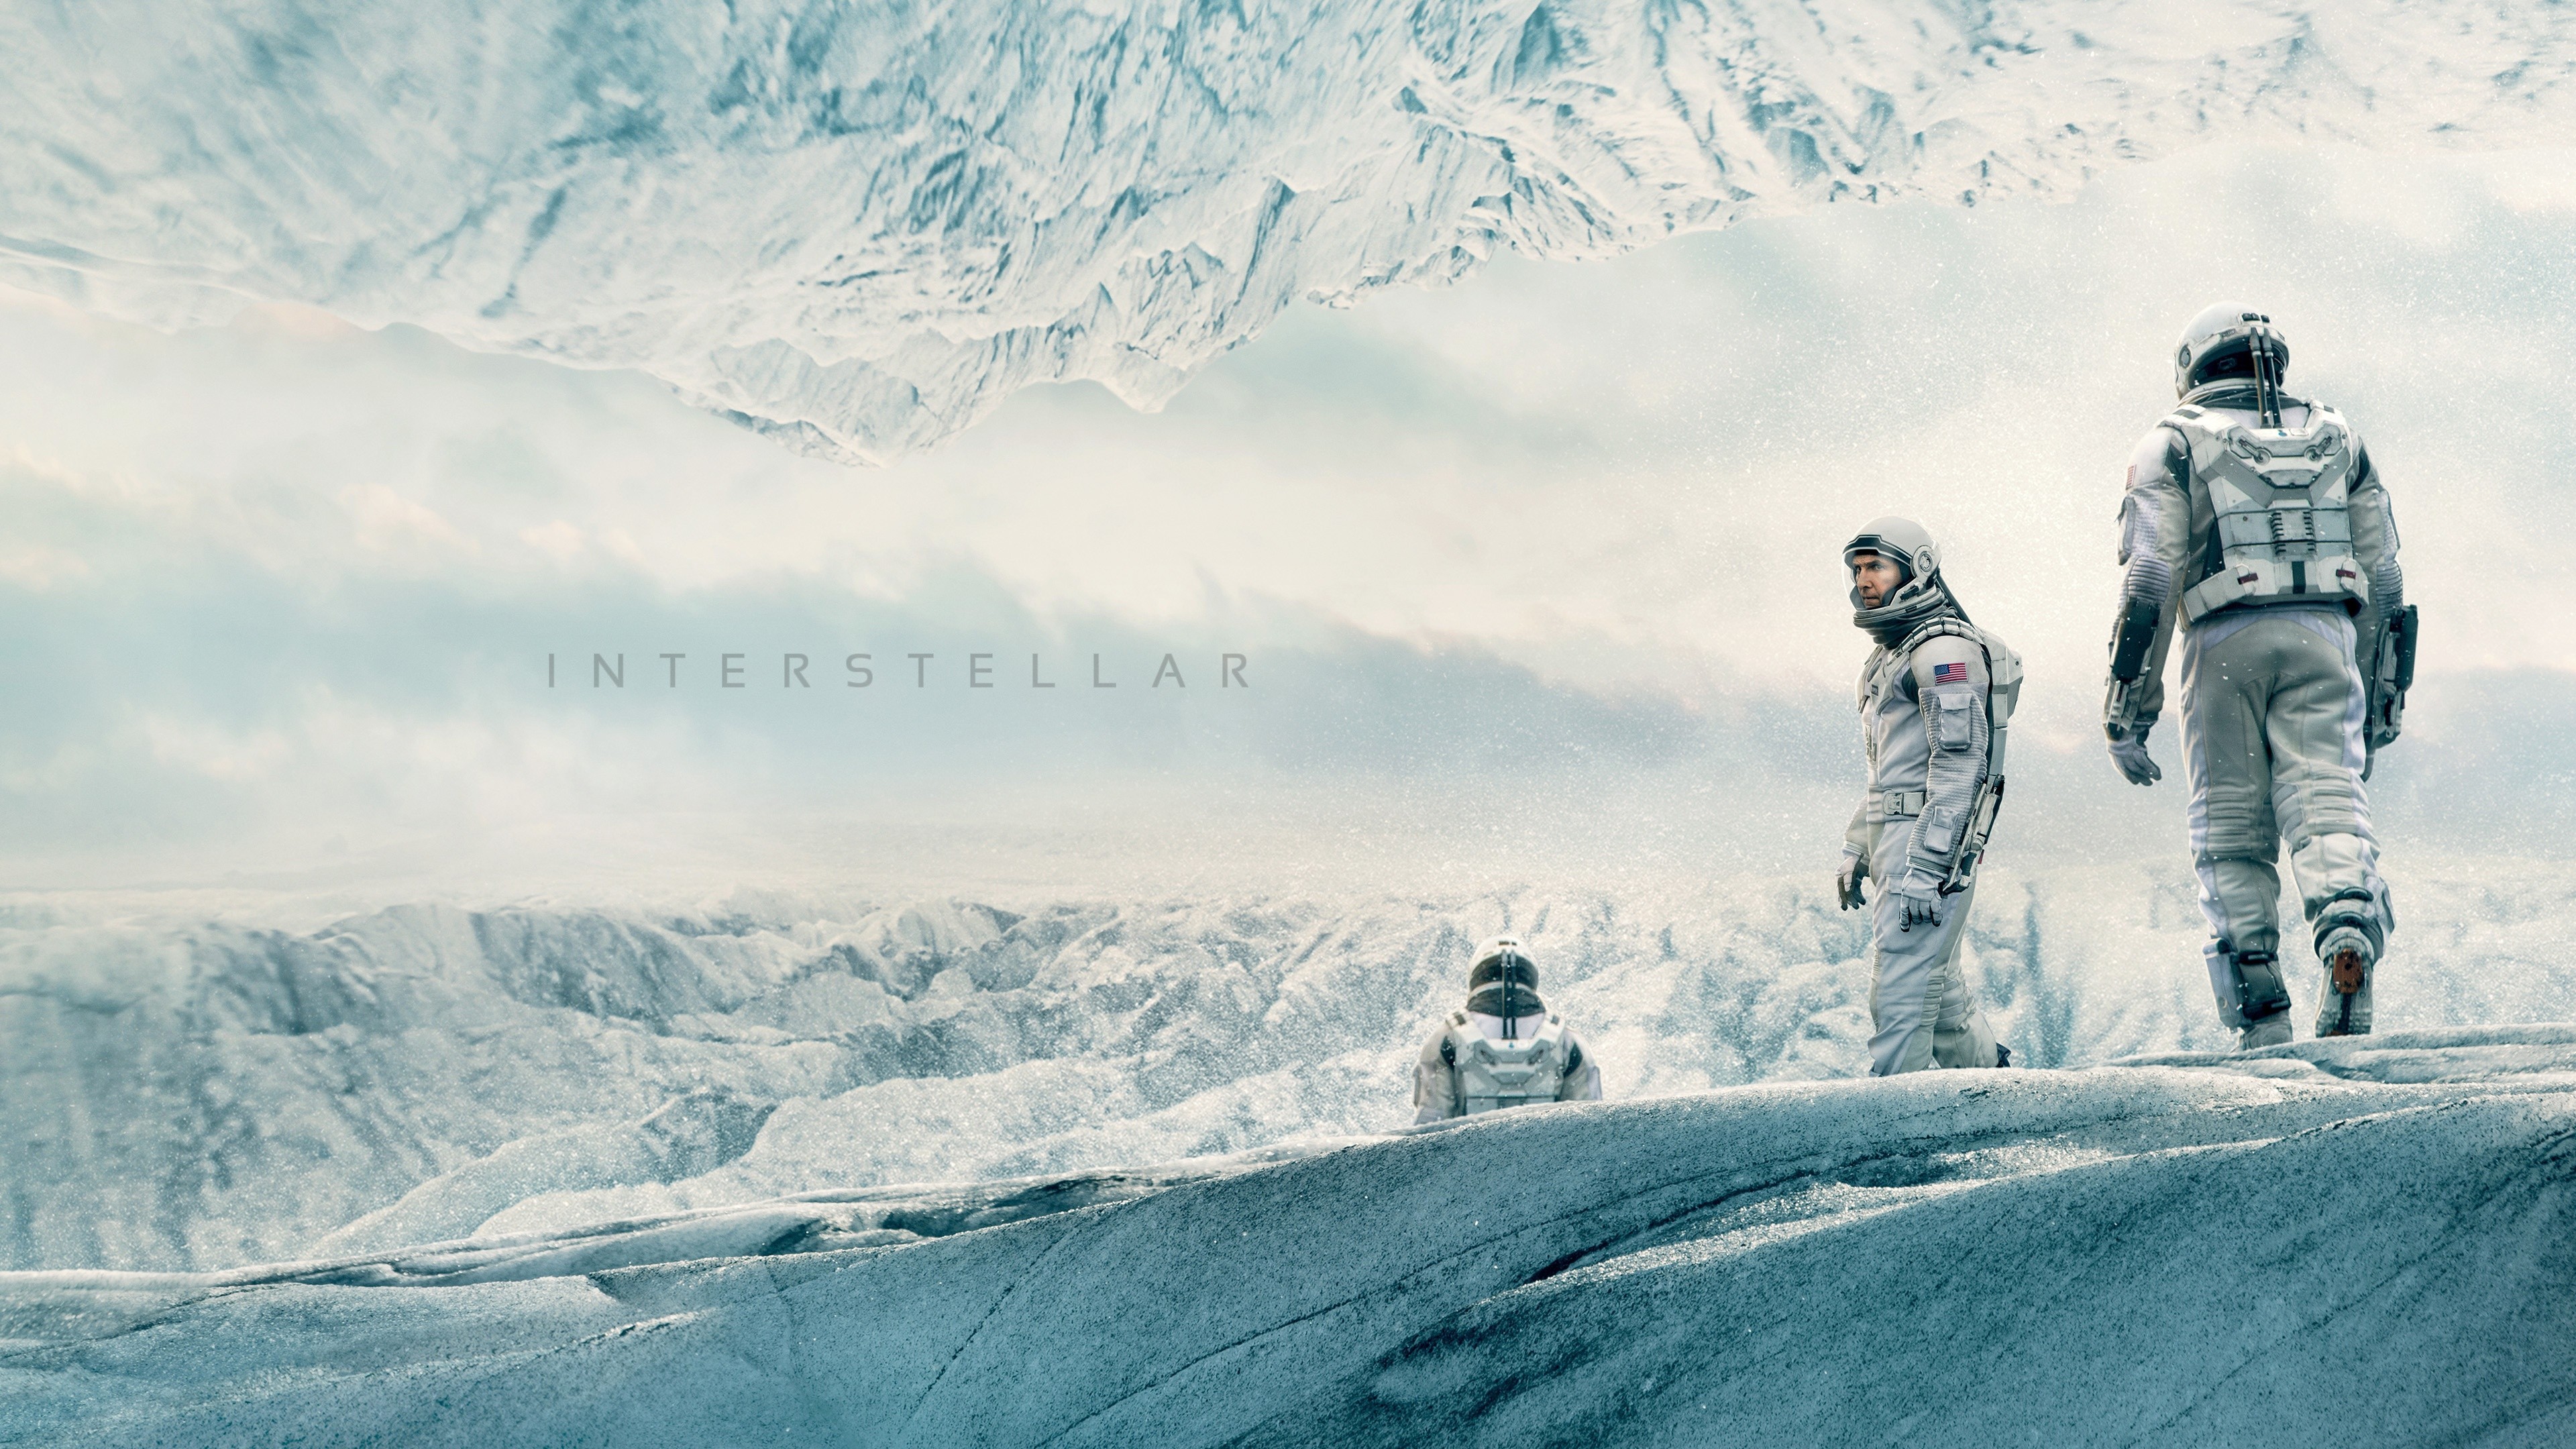 Download Interstellar Movie Gargantua, Interstellar, Movie, Gargantua  Wallpaper in 1440x900 Resolution